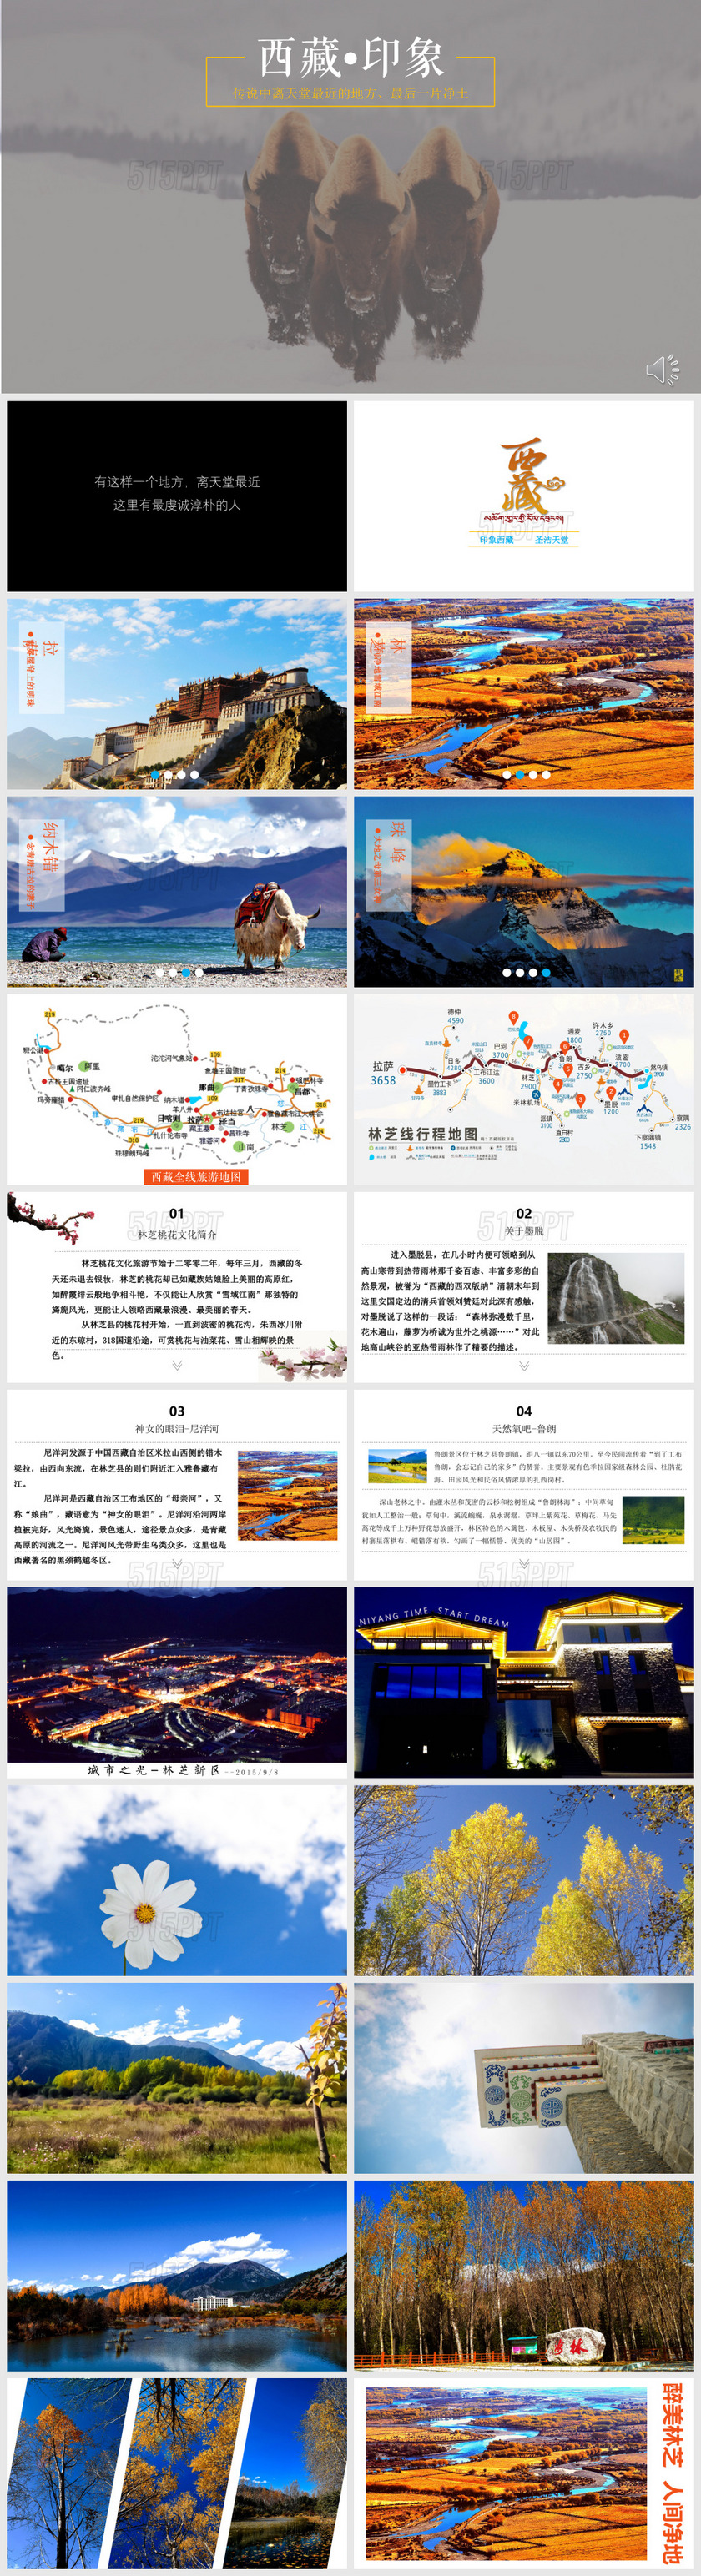 西藏印象旅行PPT模板